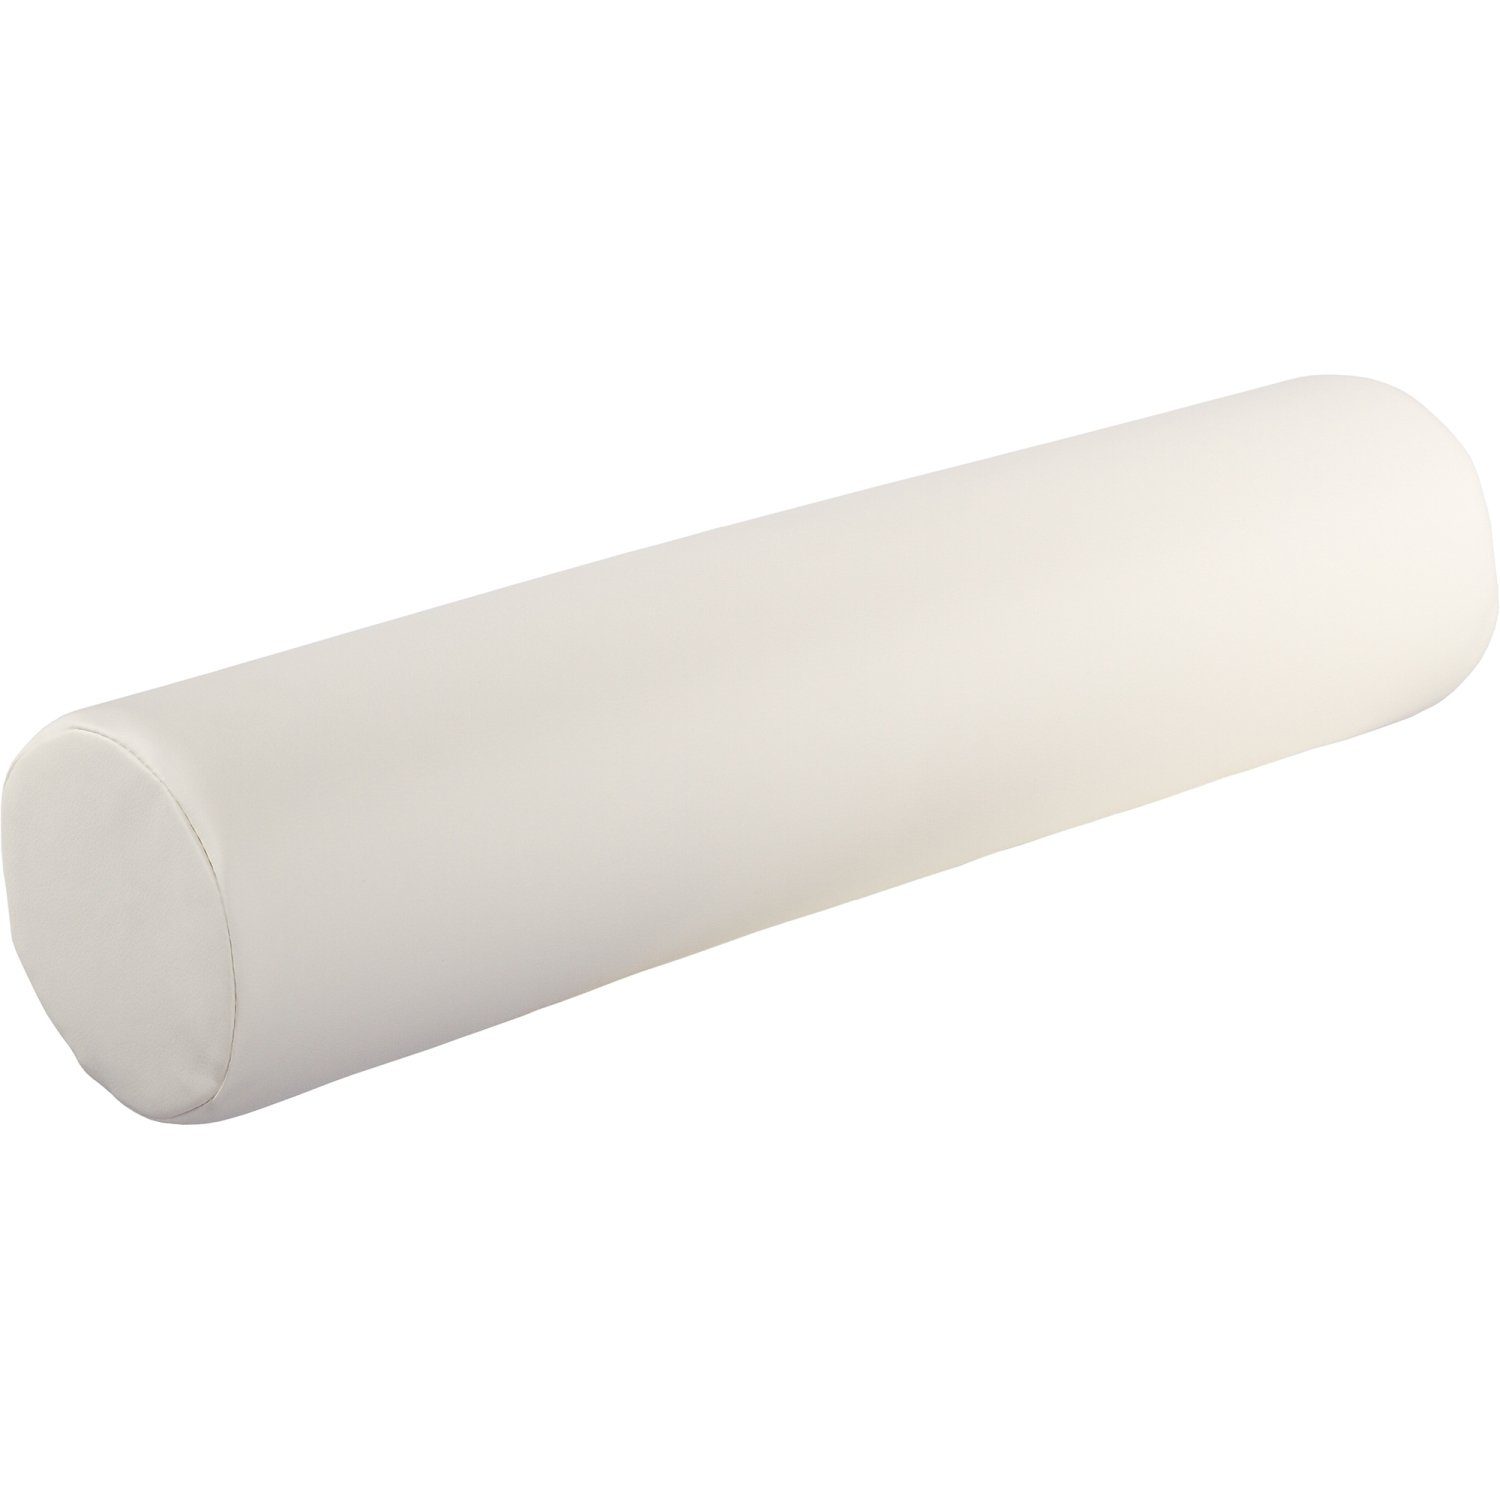 MOVIT Подушки для шеи XL Nackenrolle weiß, 68 (L) x 15 cm, Lagerungsrolle, Подушки für Massageliege Knierolle Therapie Rolle